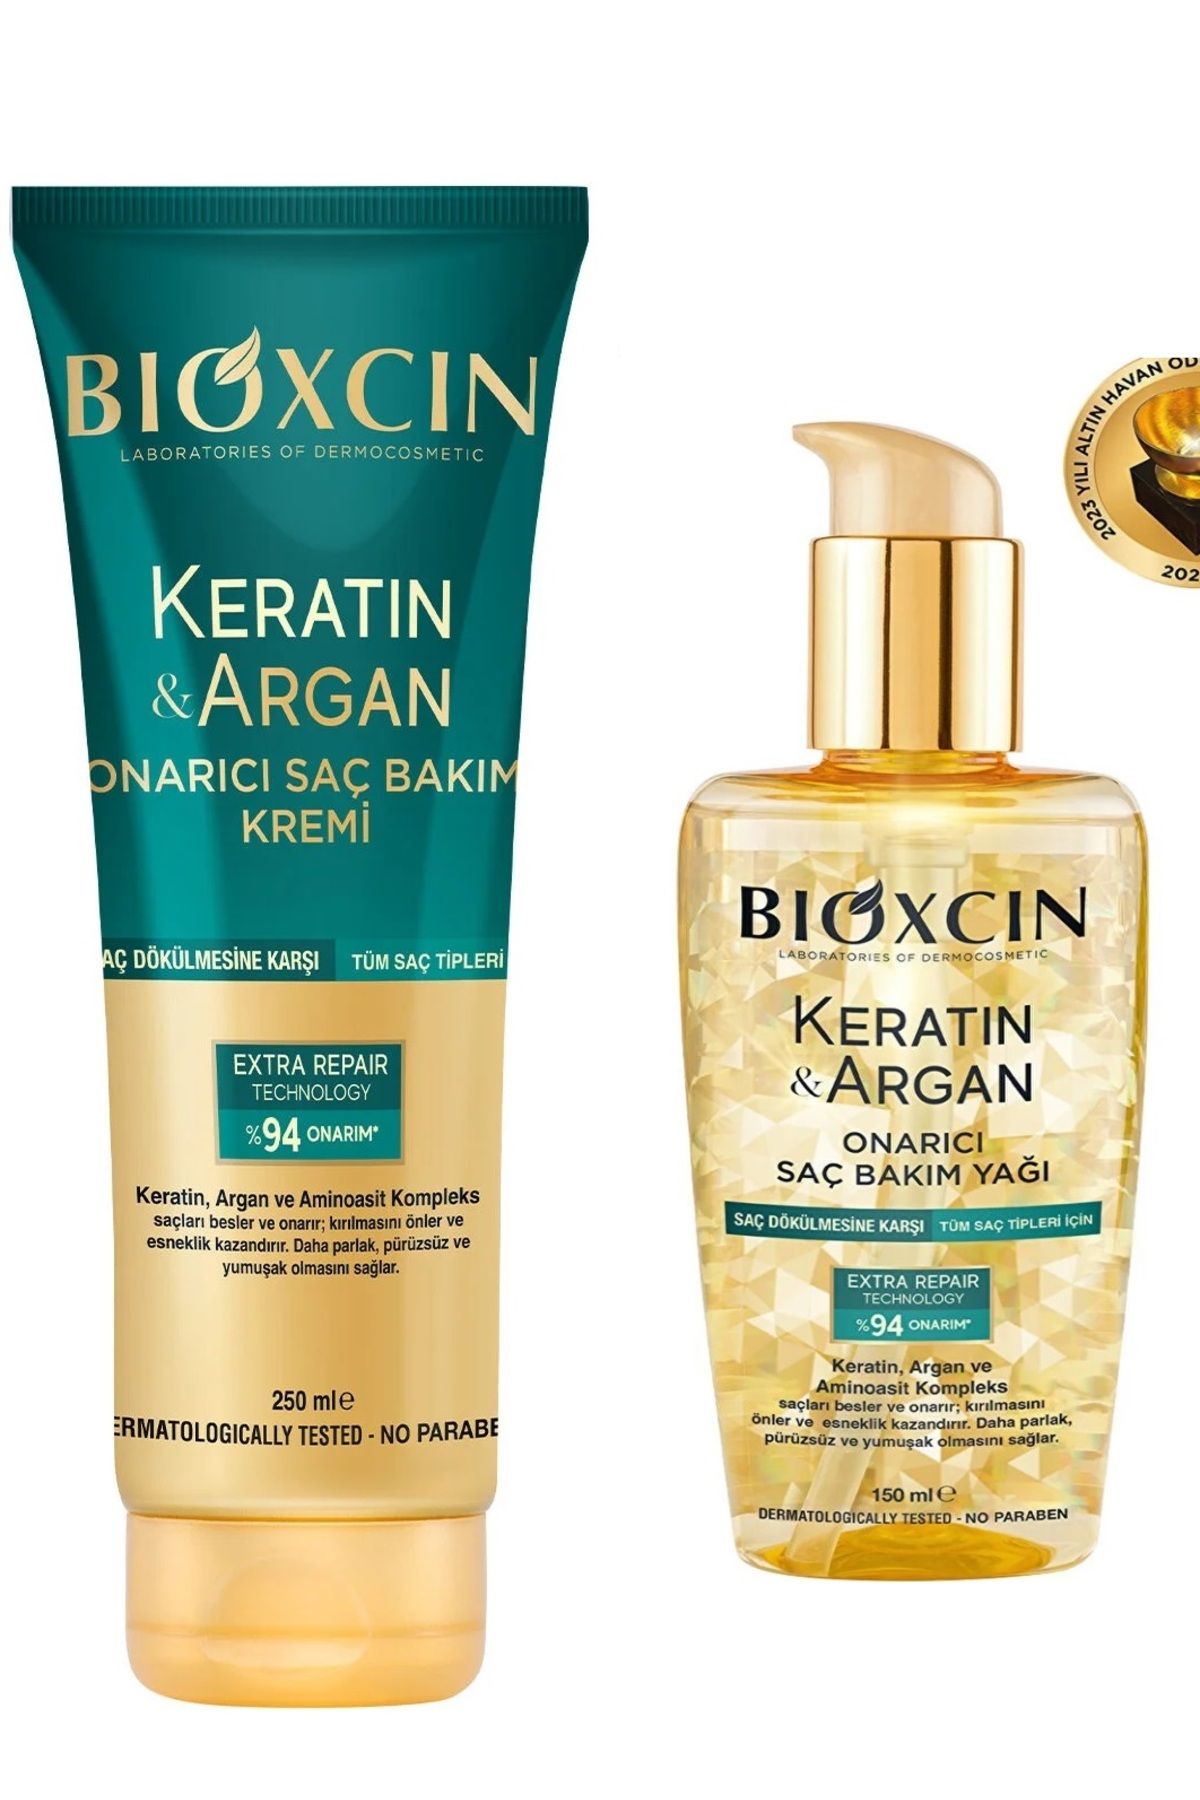 Bioxcin Keratin Argan Besleyici Onarıcı Saç Bakım Yağ 150 ml - Keratin & Argan Onarıcı Saç Bakım Krem 250 m